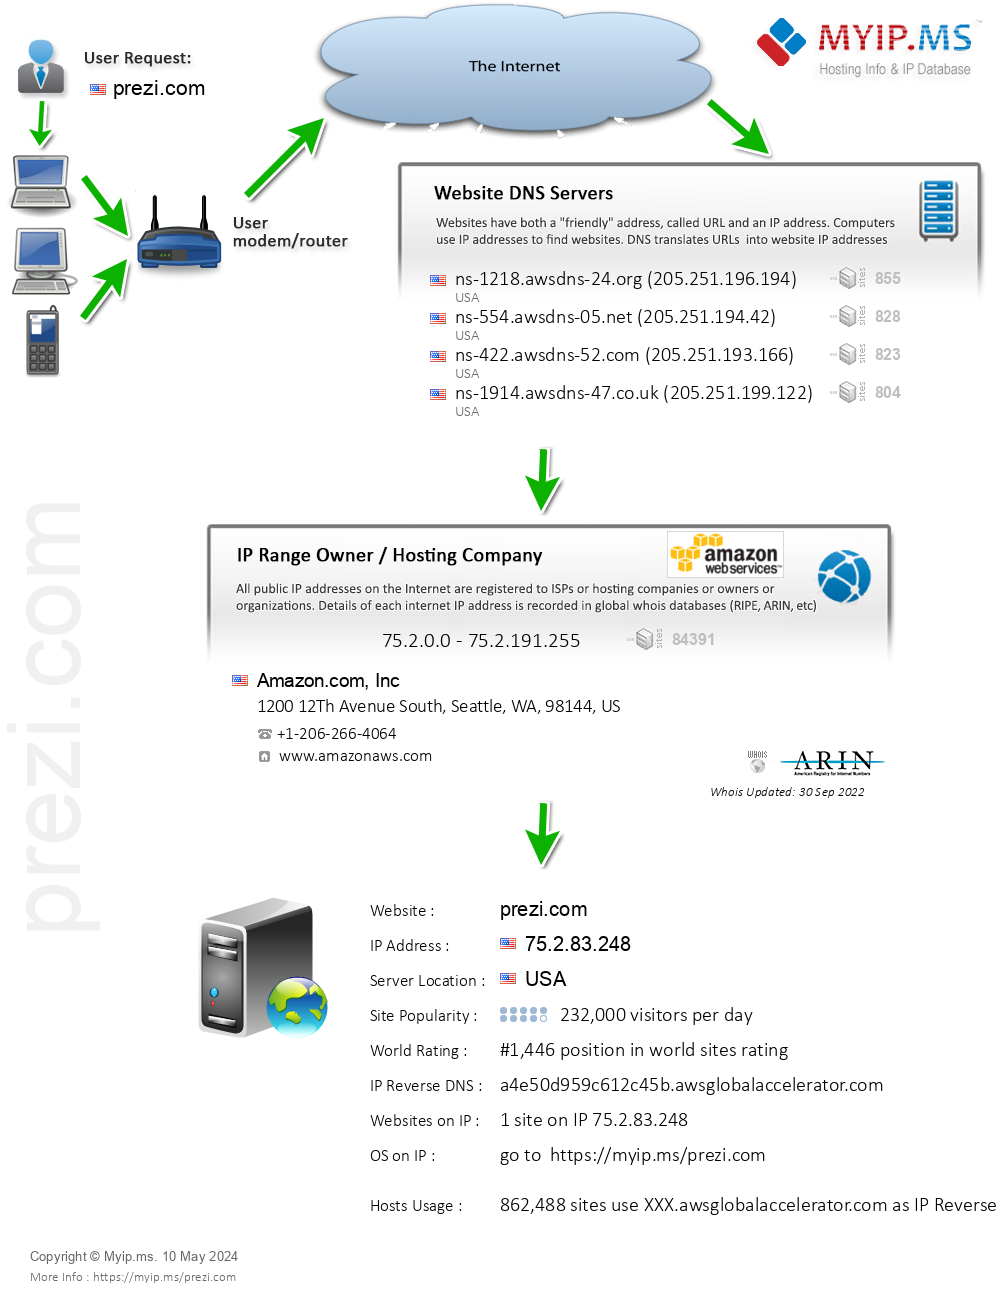 Prezi.com - Website Hosting Visual IP Diagram